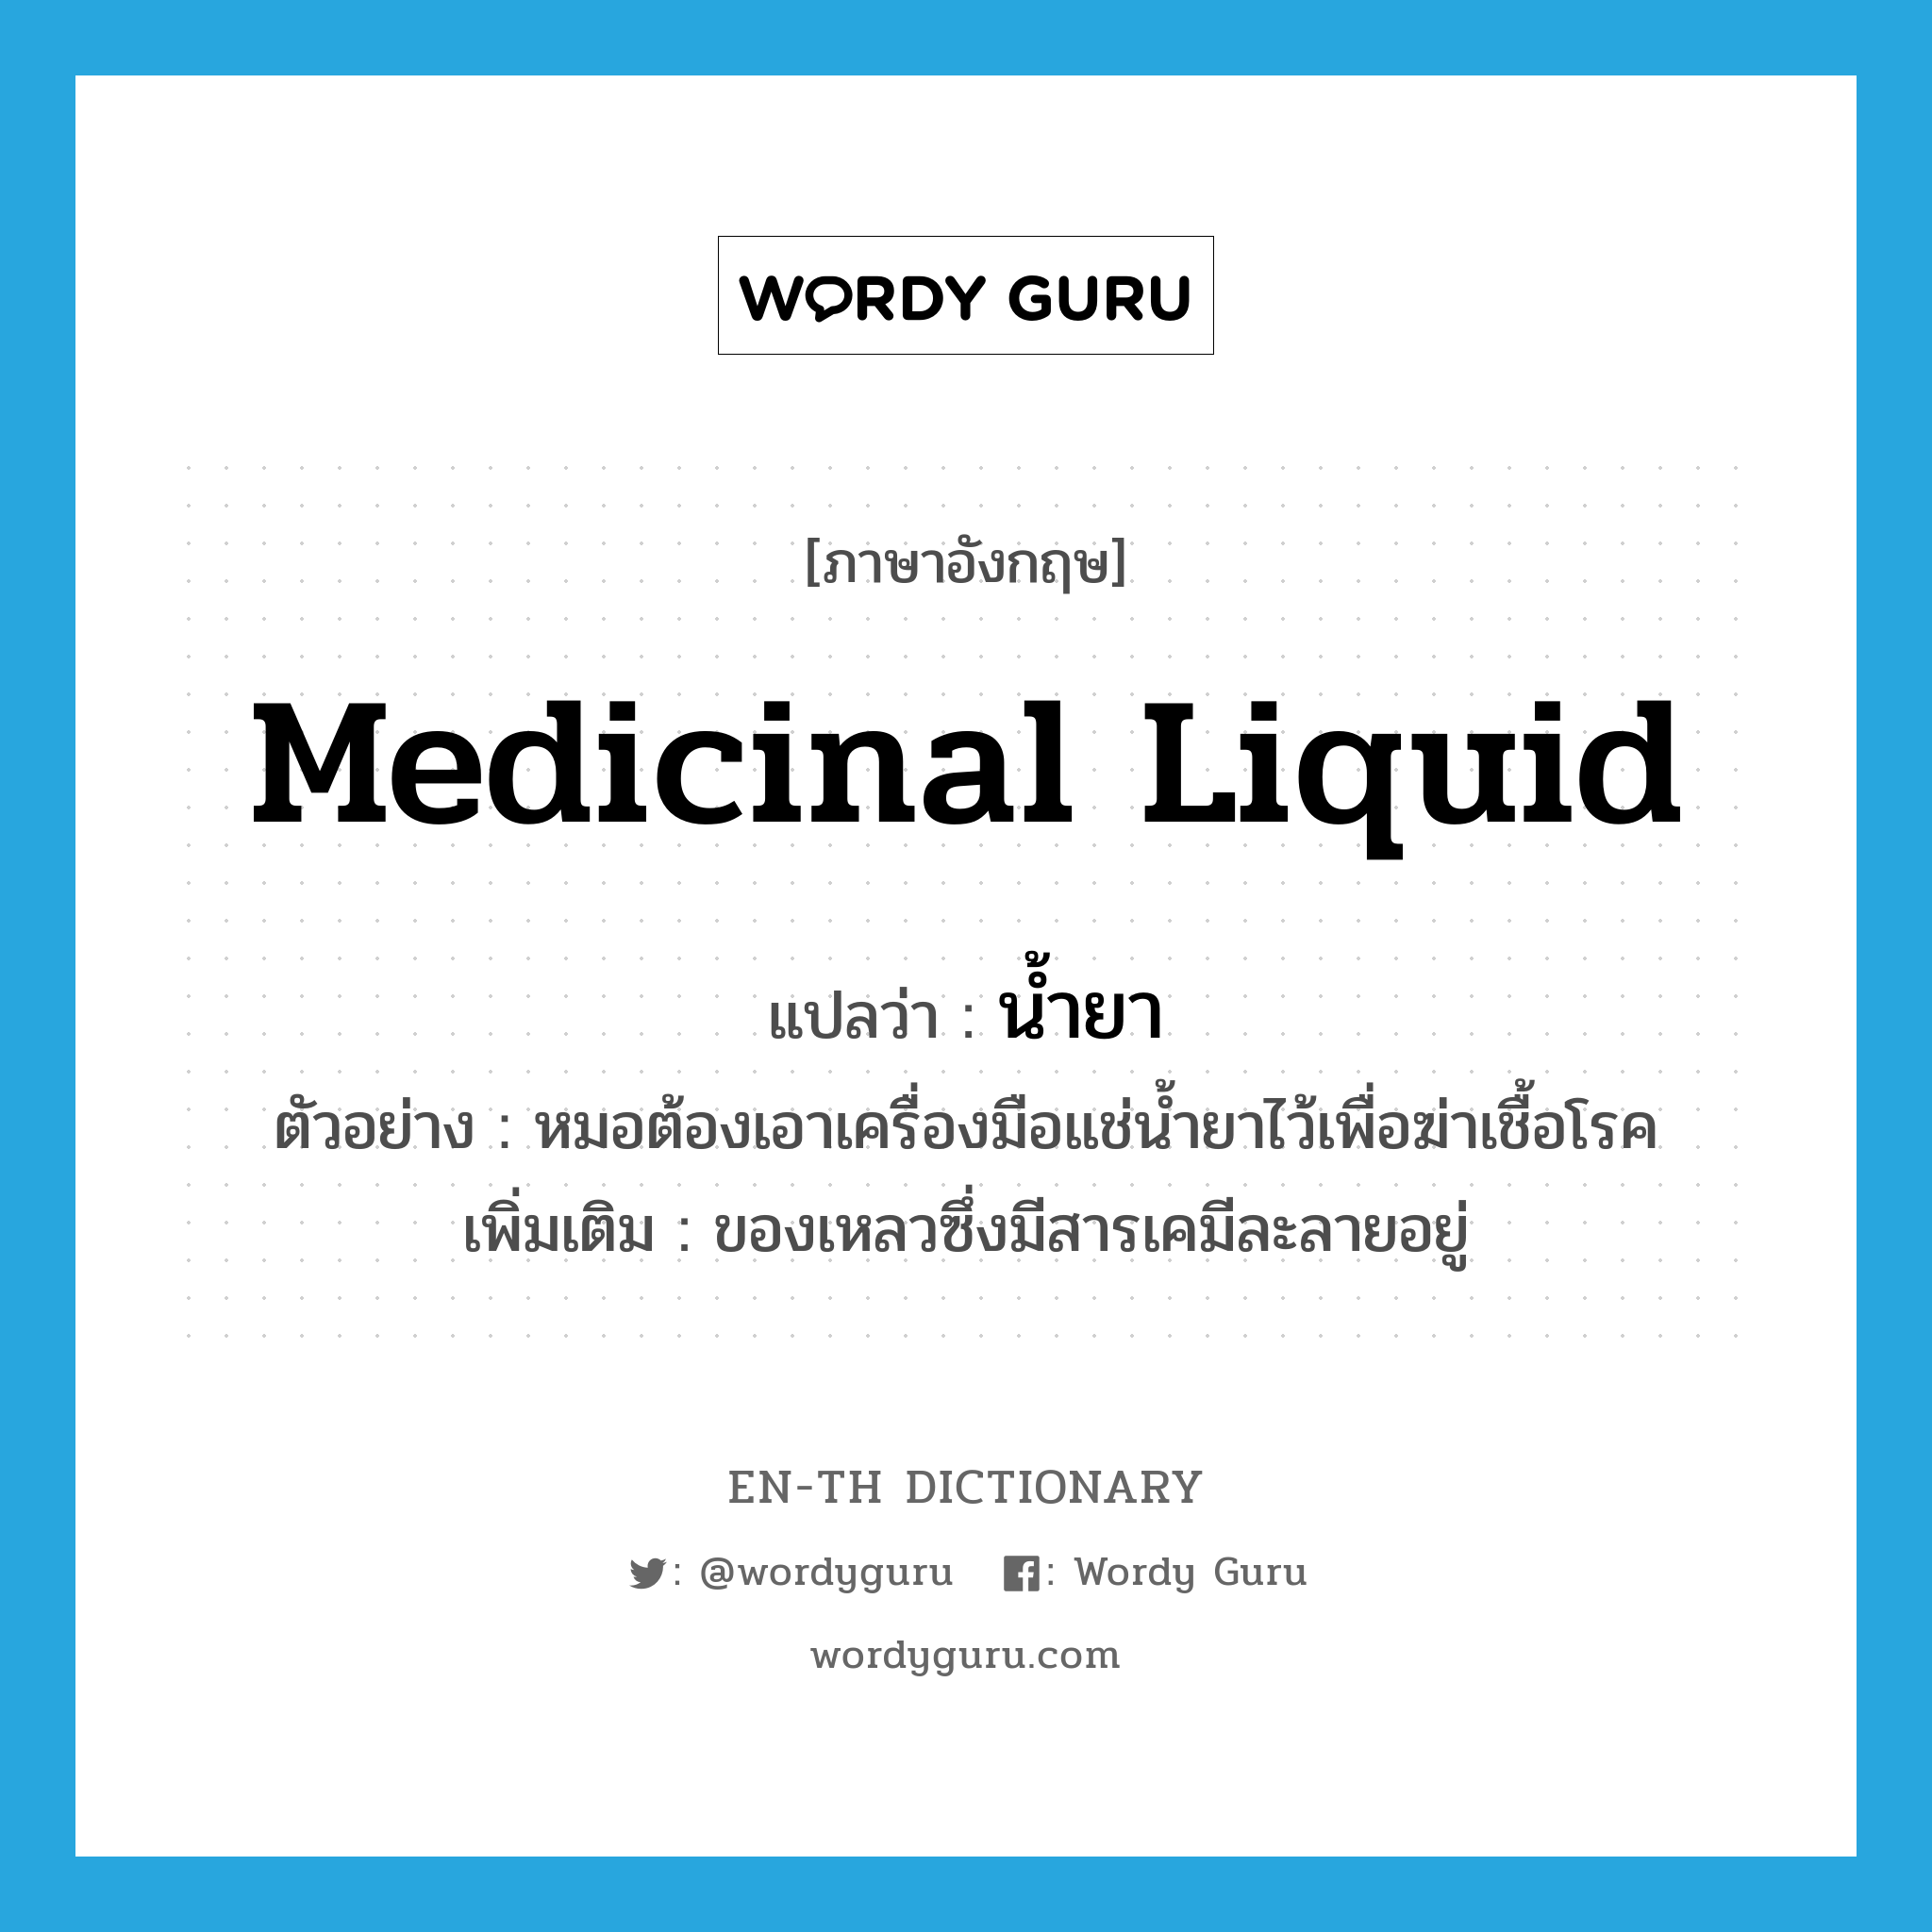 medicinal liquid แปลว่า?, คำศัพท์ภาษาอังกฤษ medicinal liquid แปลว่า น้ำยา ประเภท N ตัวอย่าง หมอต้องเอาเครื่องมือแช่น้ำยาไว้เพื่อฆ่าเชื้อโรค เพิ่มเติม ของเหลวซึ่งมีสารเคมีละลายอยู่ หมวด N